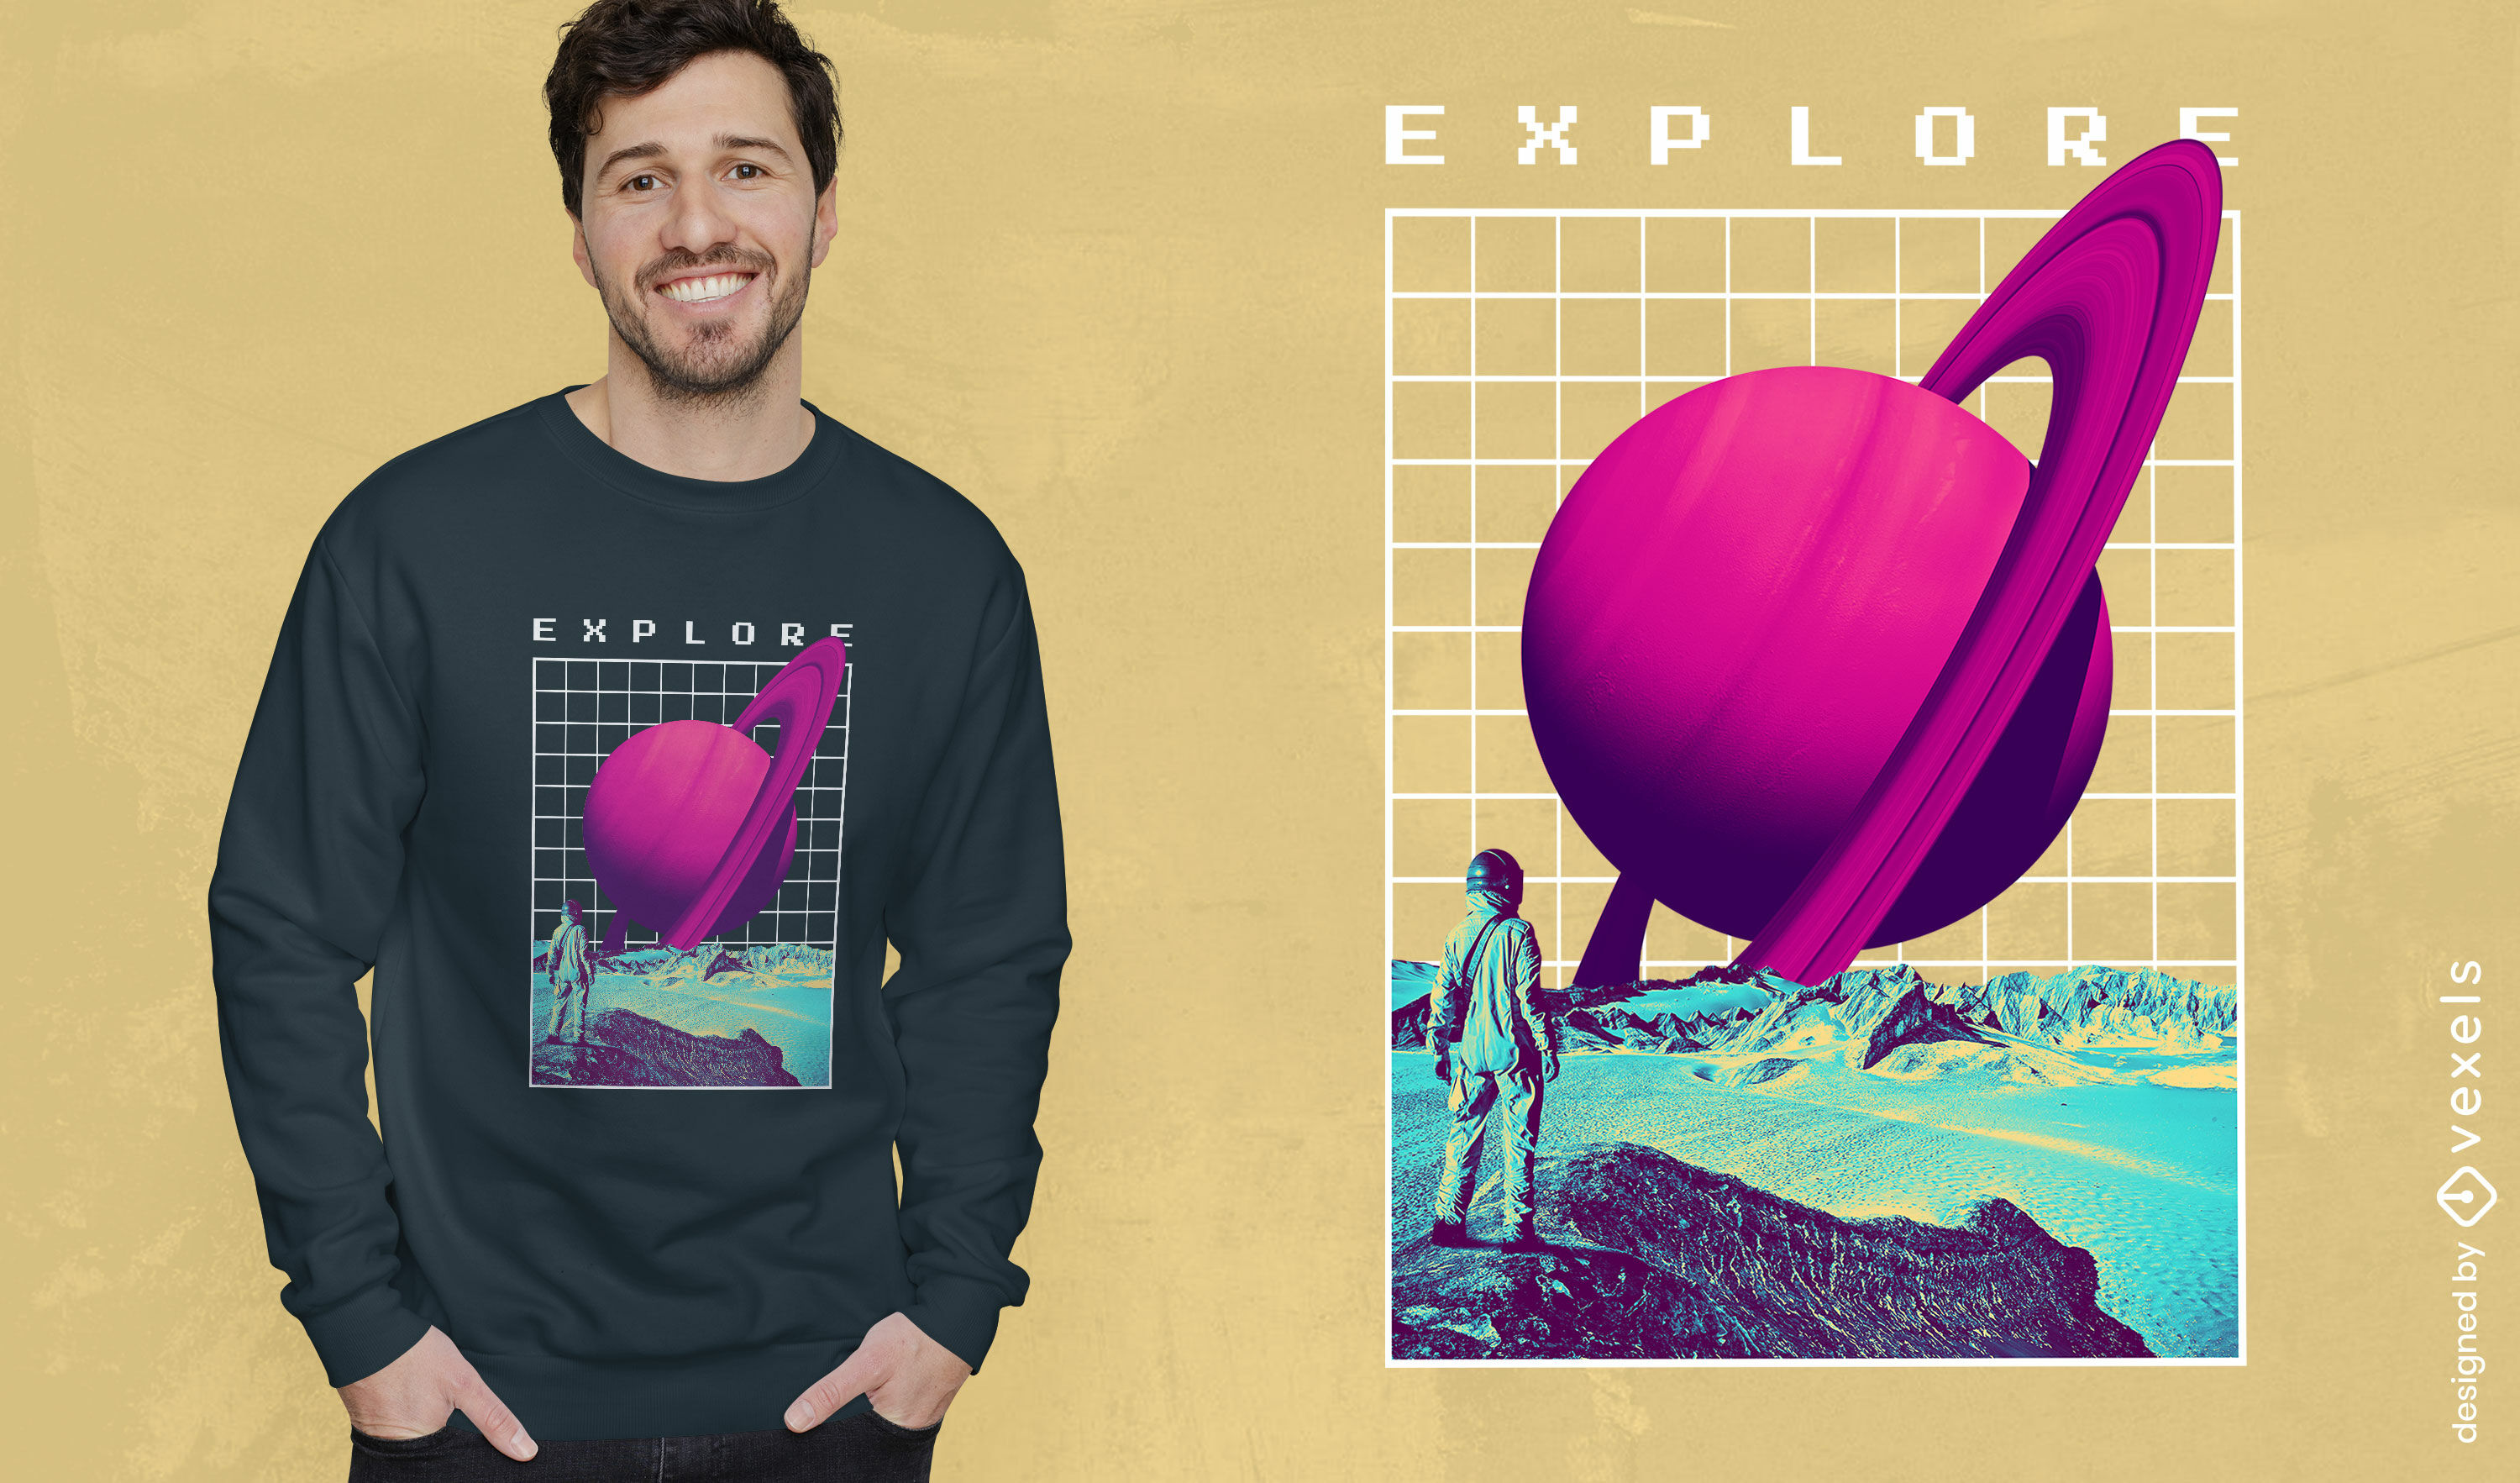 Saturn planet vaporwave t-shirt design